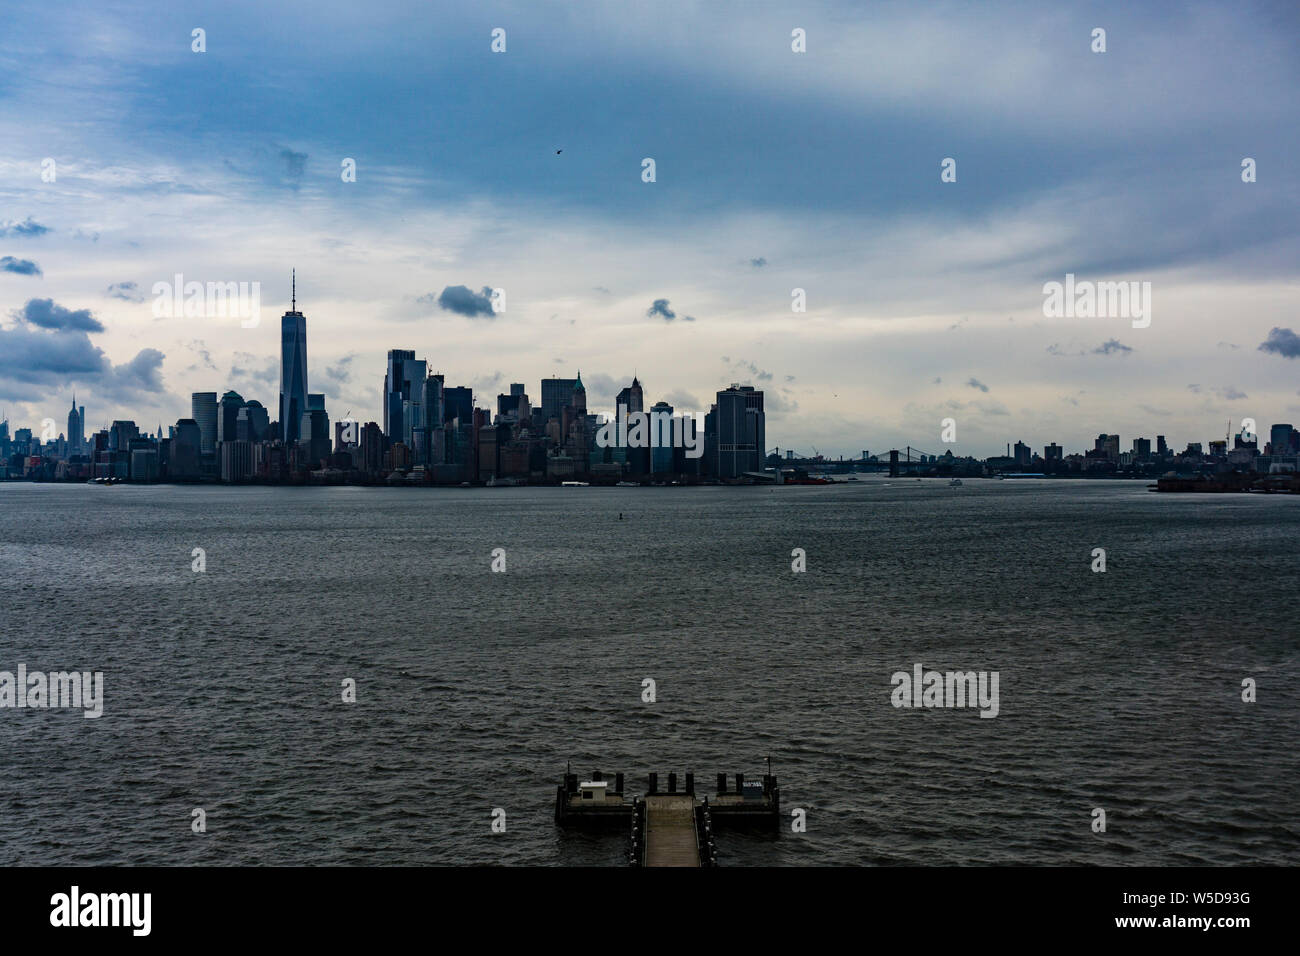 New York Manhattan Panorama from Statue of Liberty island Stock Photo